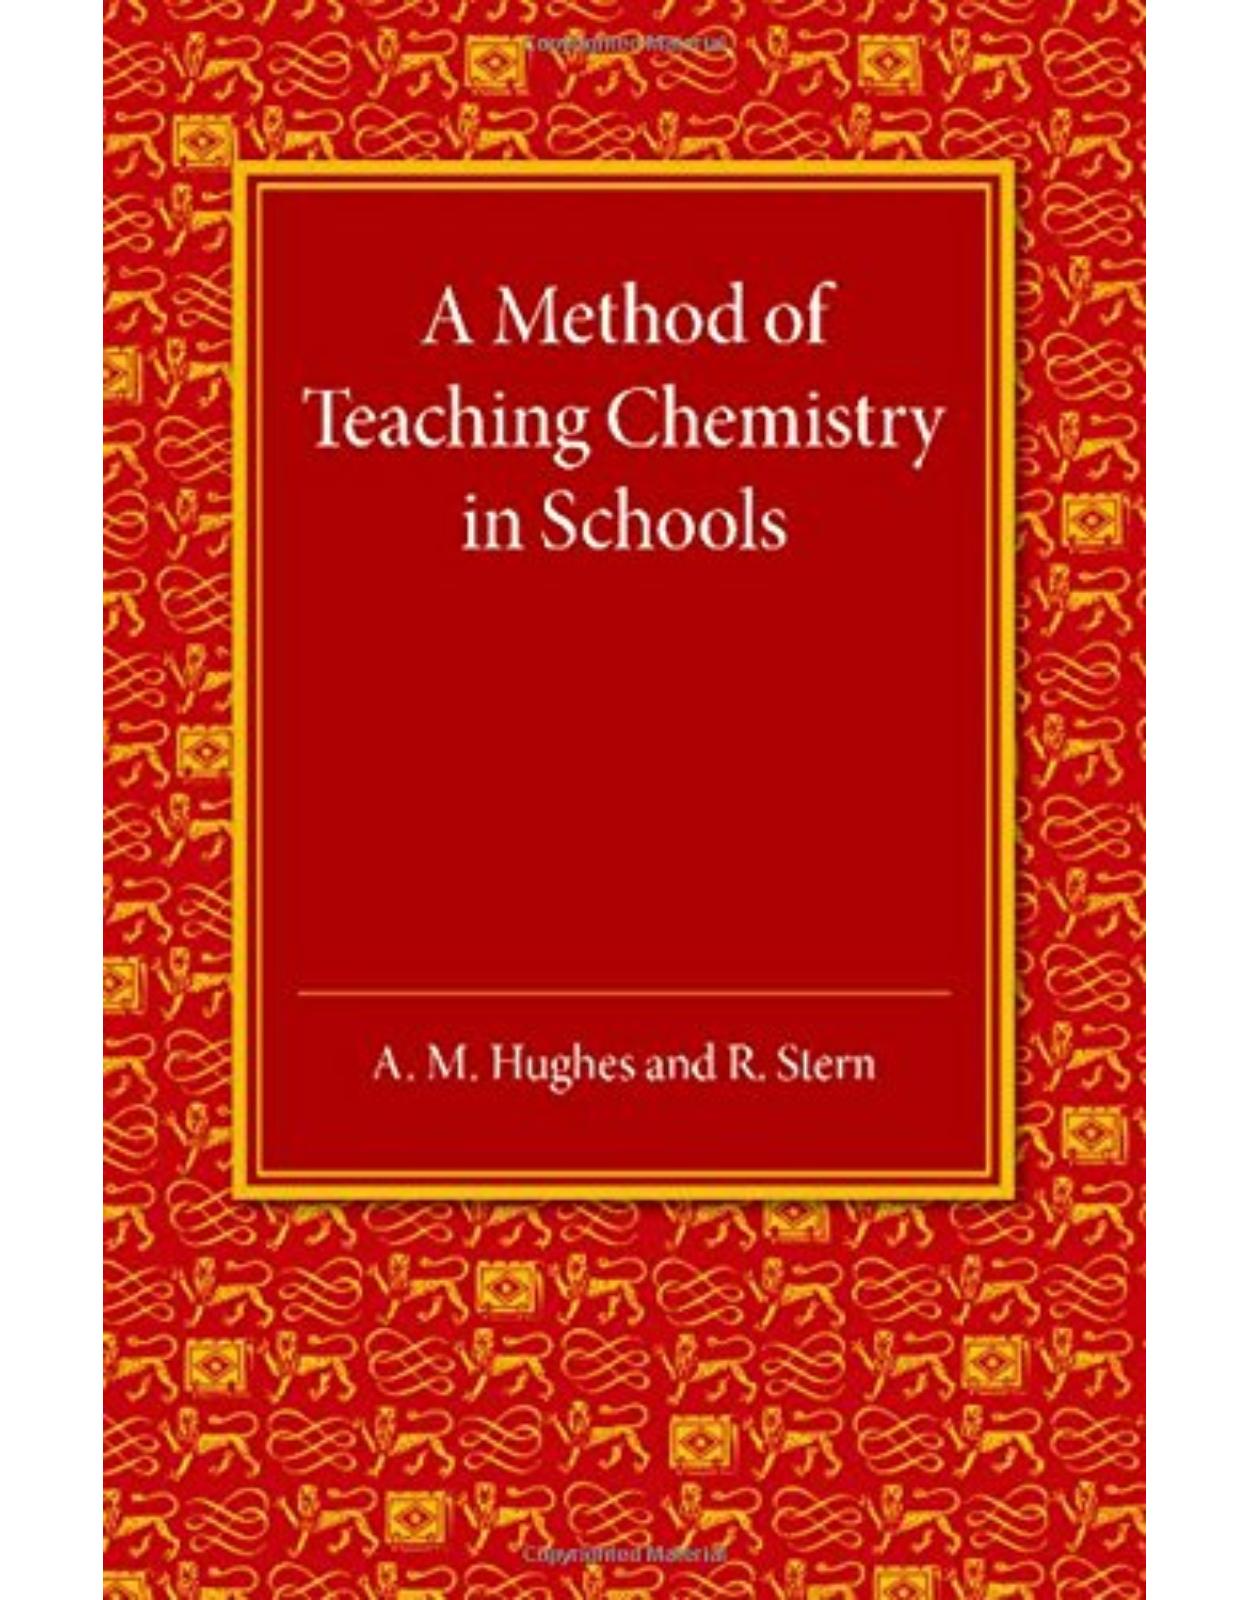 A Method of Teaching Chemistry in Schools